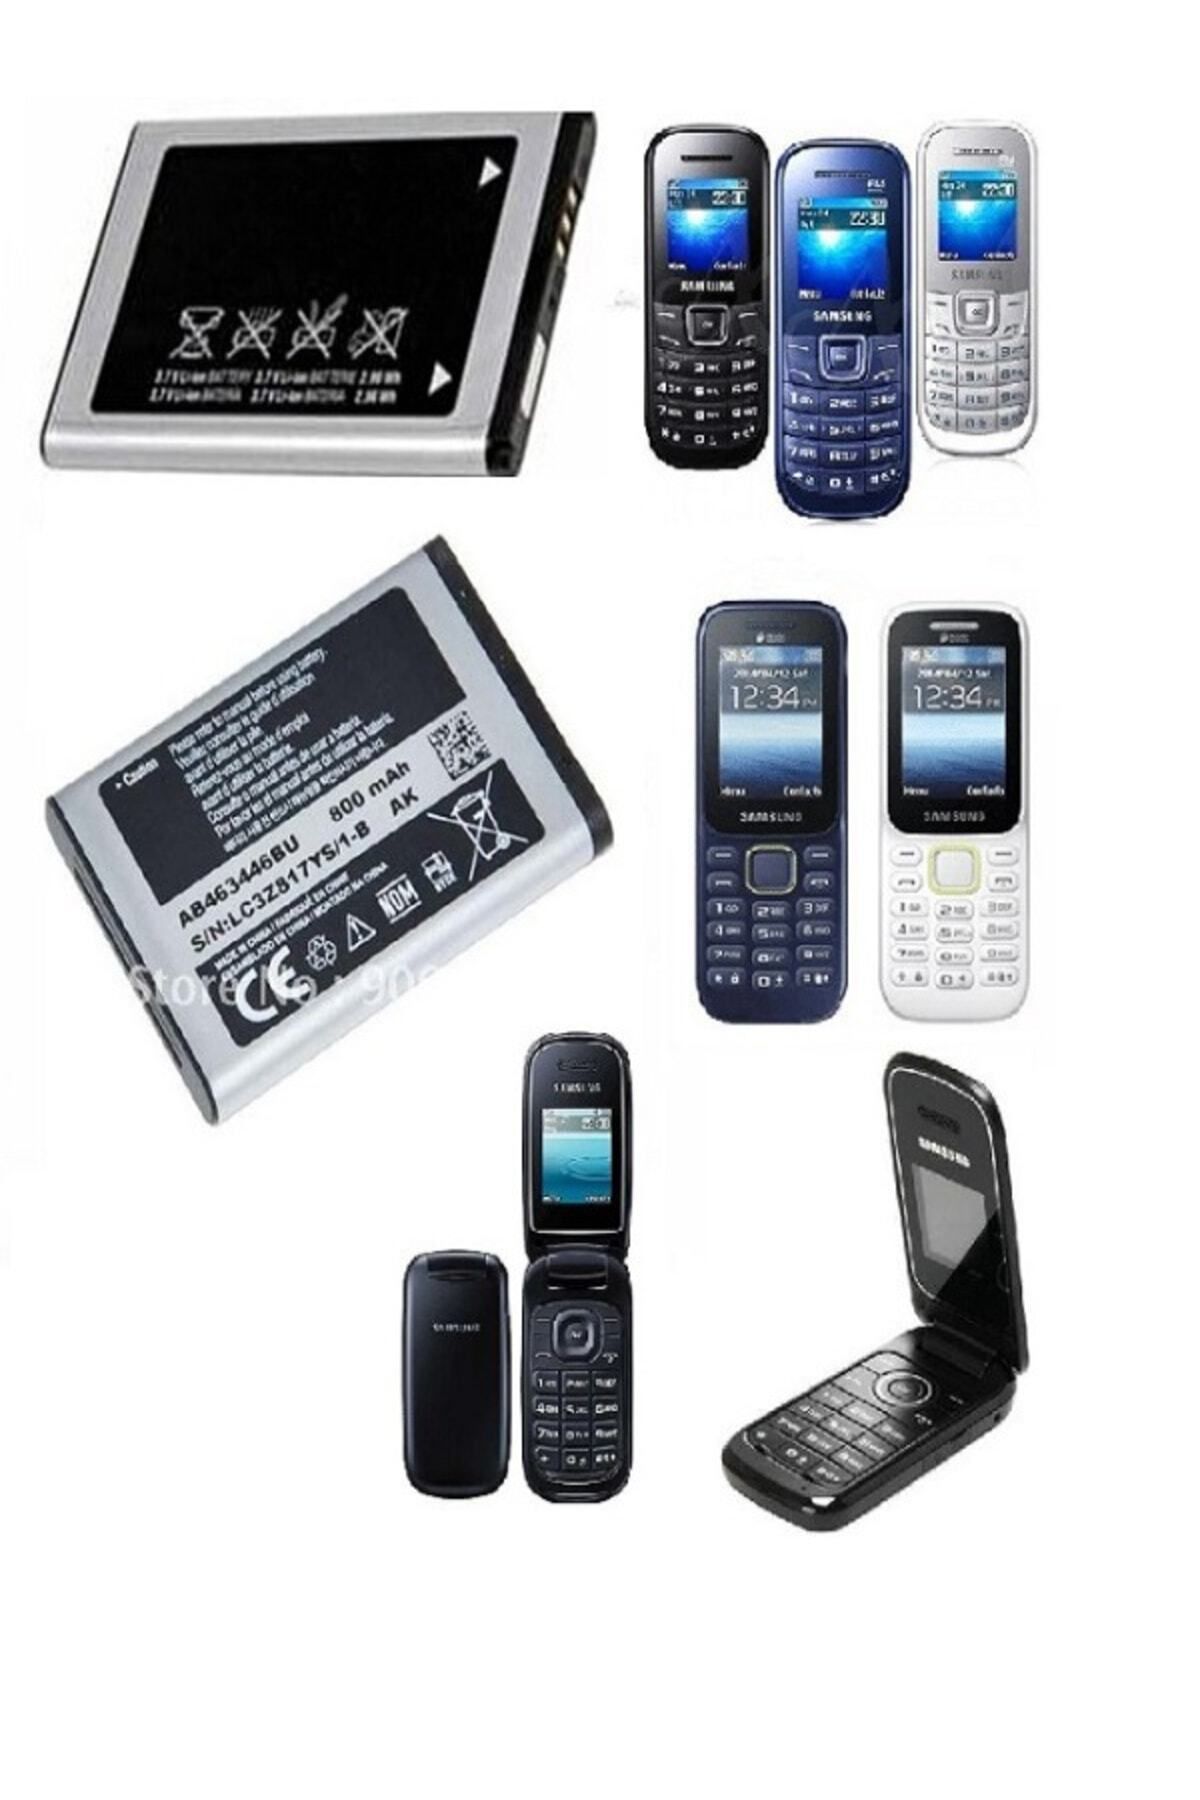 JAXEL Yedek Samsung Tuşlu Cep Telefonlarına Uyumlu 800 Mah. Batarya Pil B310/1190/1205/1270/e250